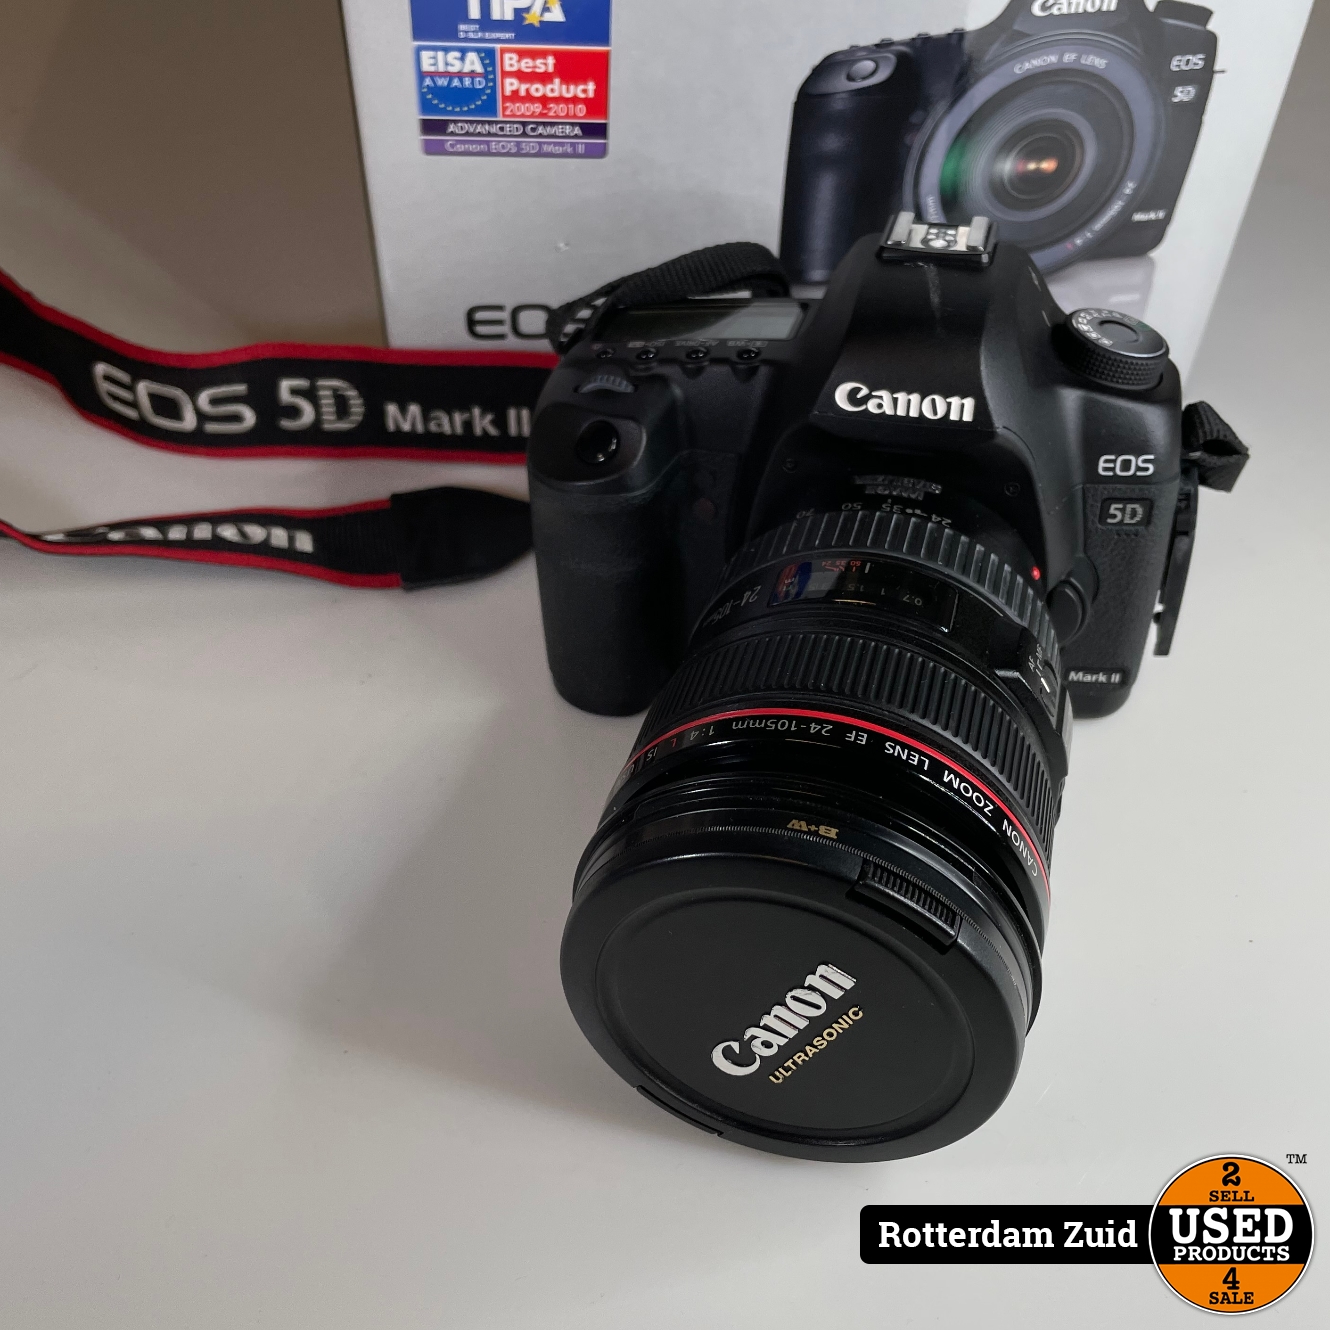 Canon 5D Mark 2 EF 24-105 L IS USM Kit | Nieuwstaat | Met Garantie Used Products Rotterdam Zuid